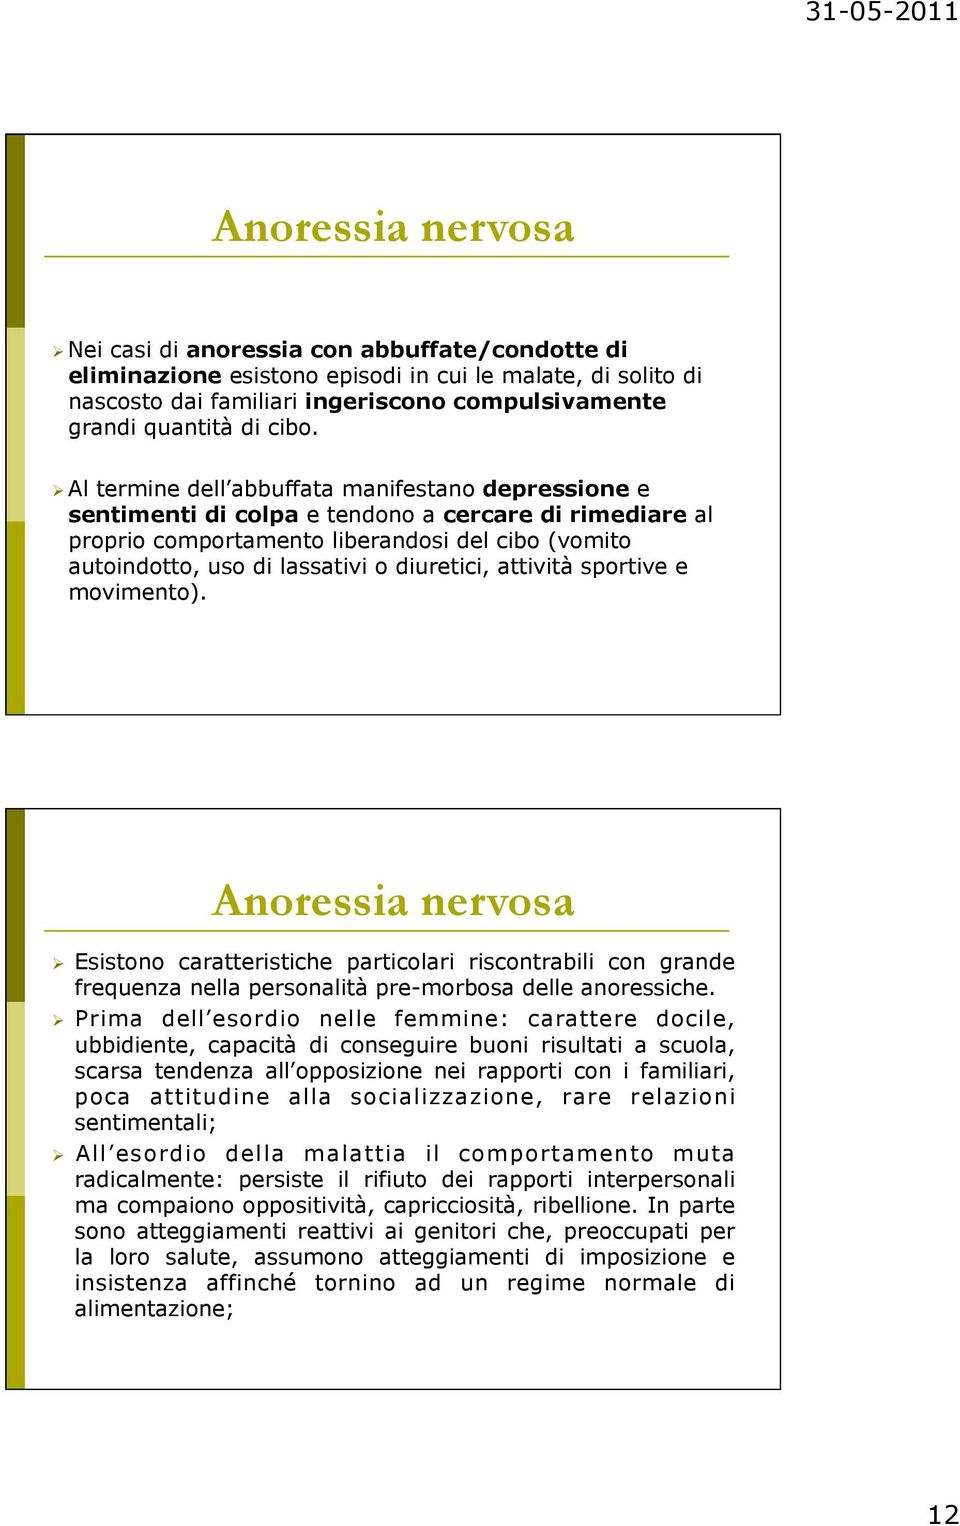 diuretici, attività sportive e movimento). Anoressia nervosa Esistono caratteristiche particolari riscontrabili con grande frequenza nella personalità pre-morbosa delle anoressiche.